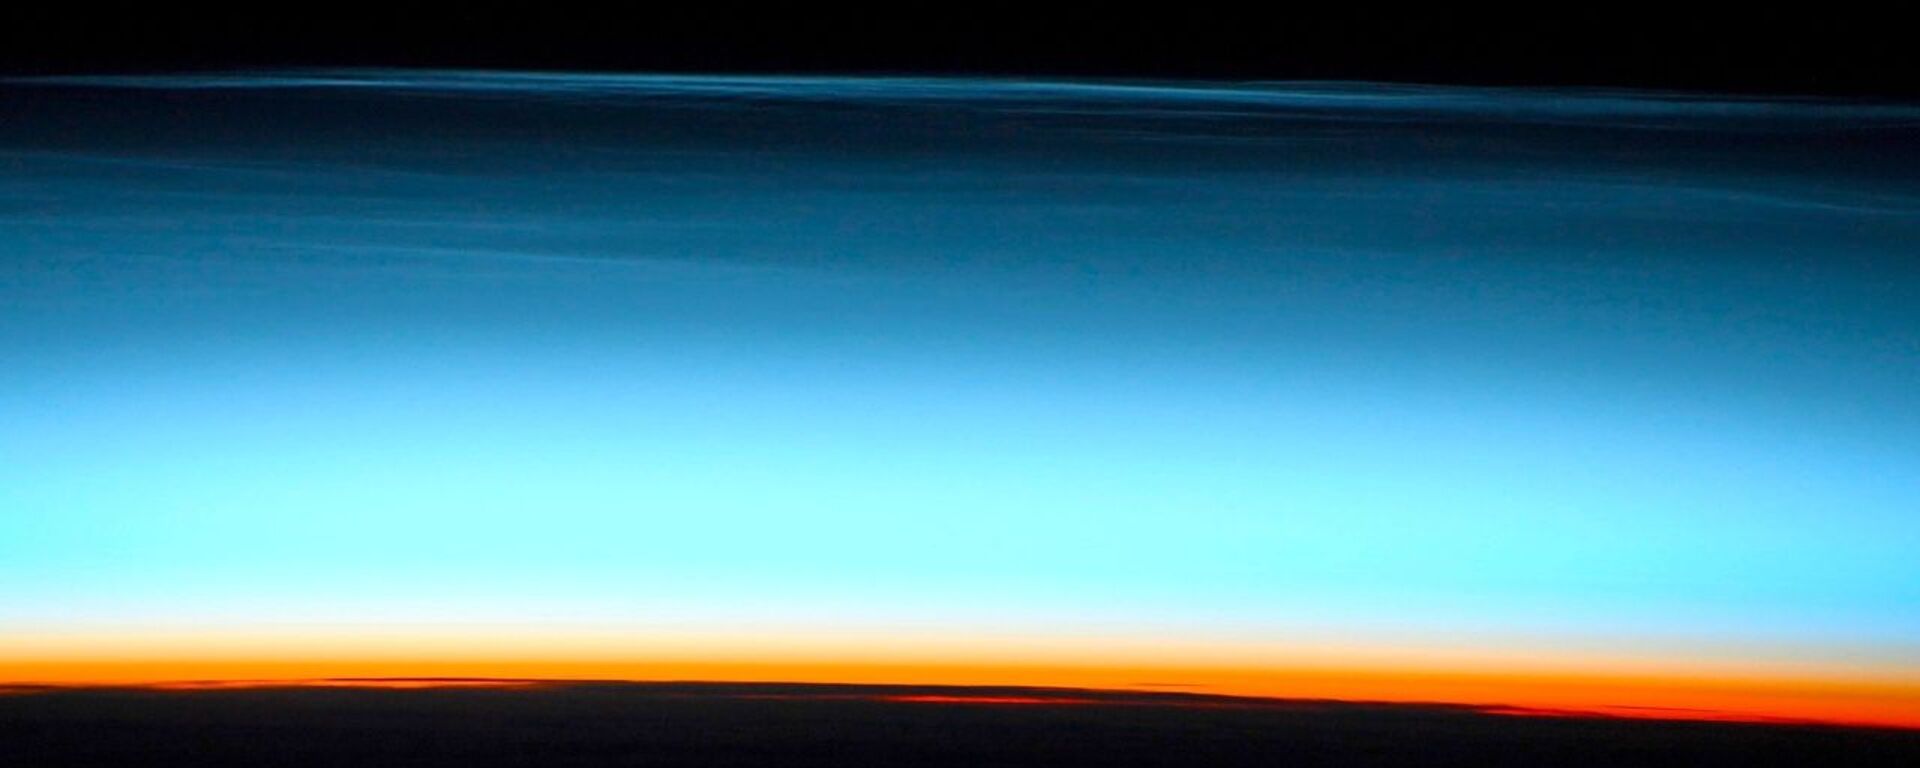 Серебристые облака, снятые российским космонавтом Сергеем Кудь-Сверчковым с МКС - Sputnik Грузия, 1920, 19.03.2021